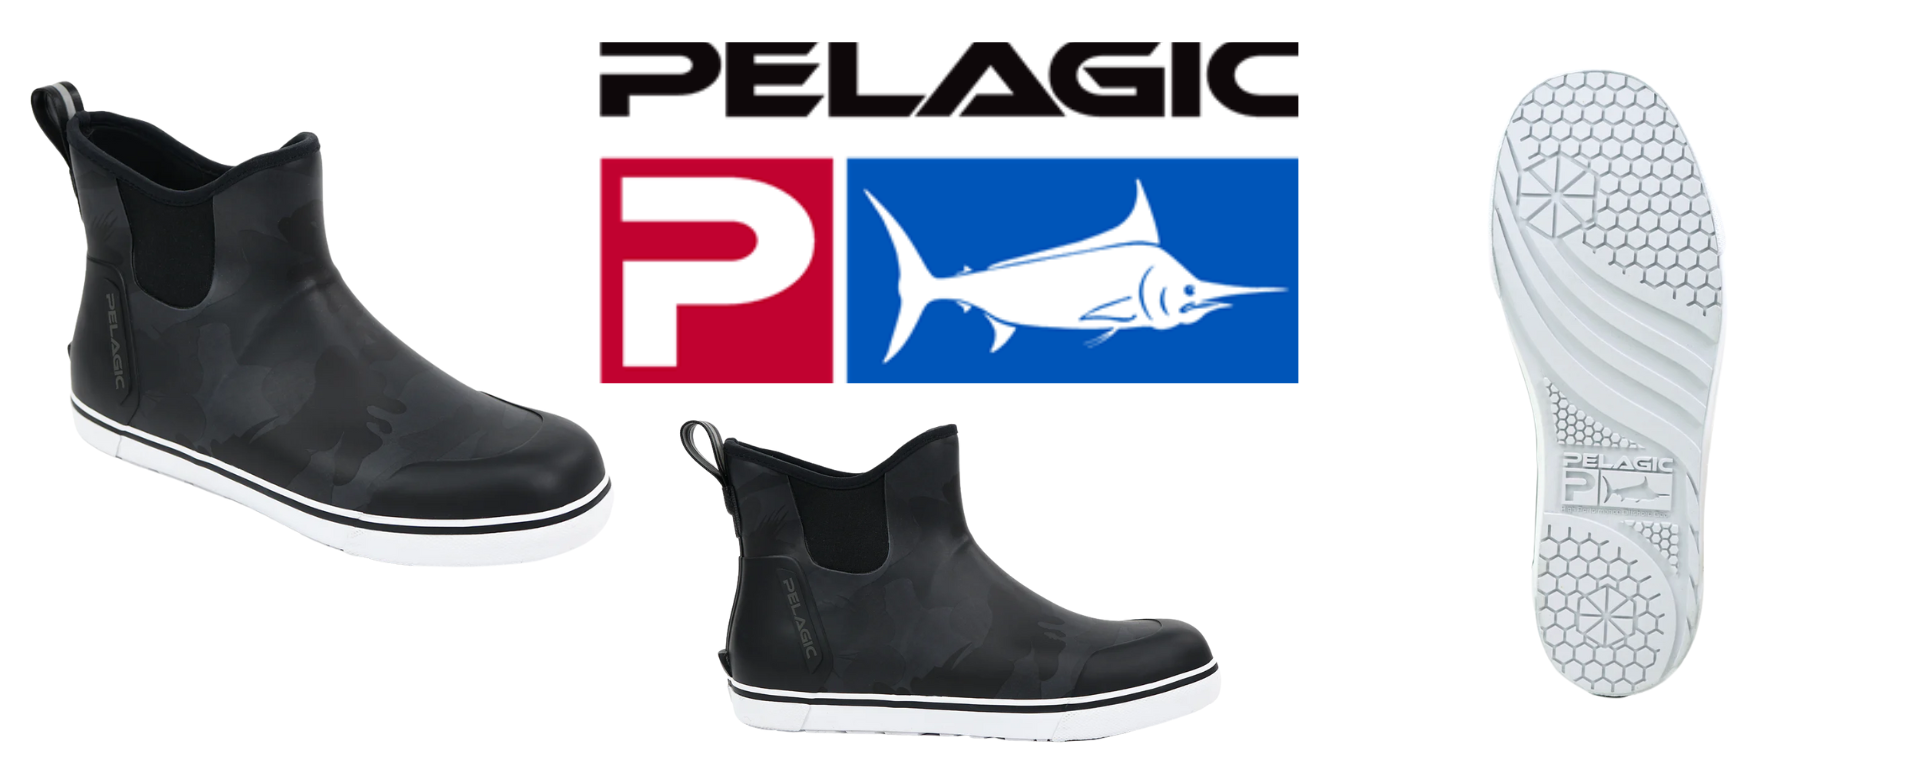 Pelagic Pursuit 6 Deck Boots